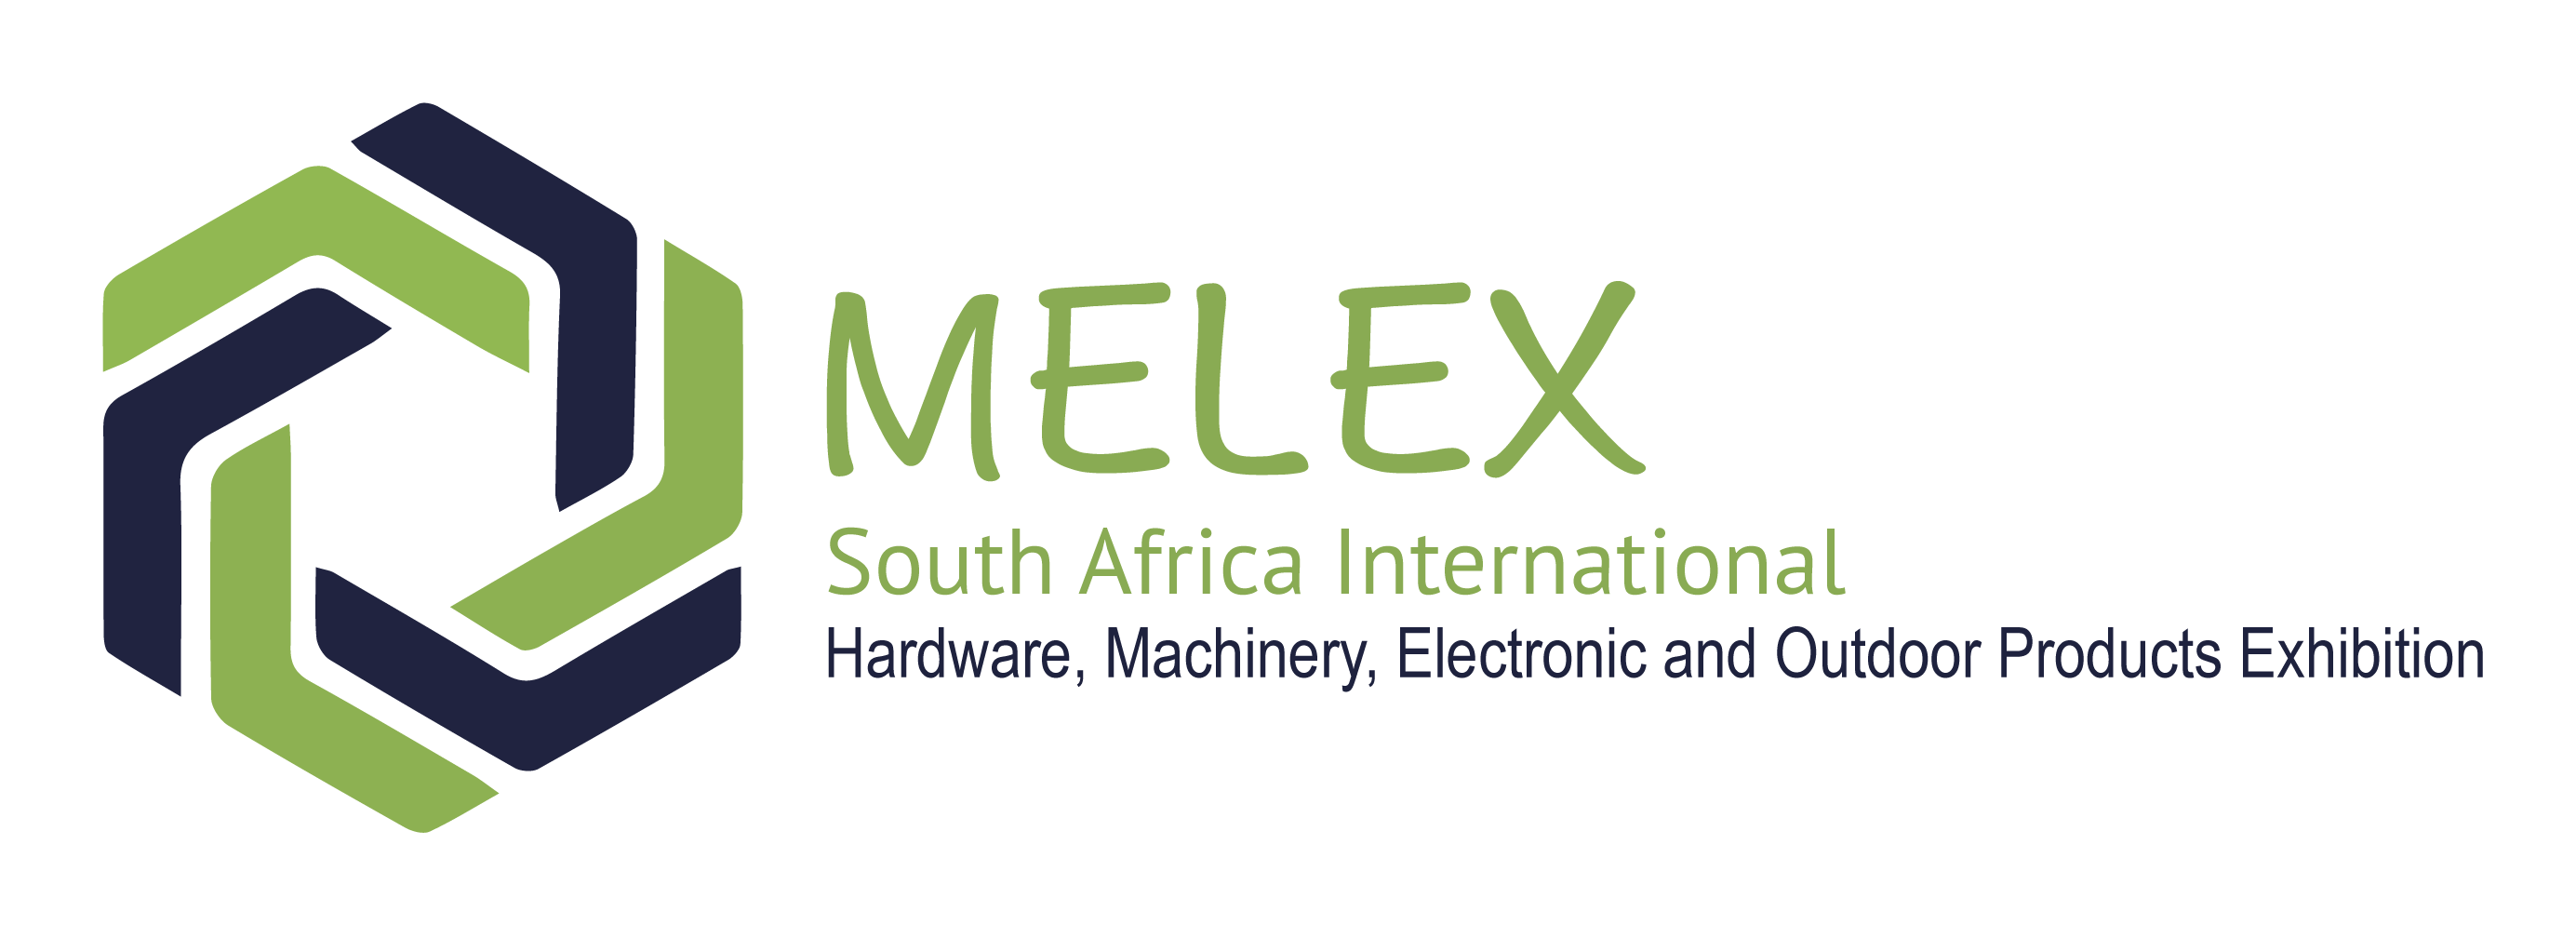 南非MELEX国际五金机电及户外用品展览会